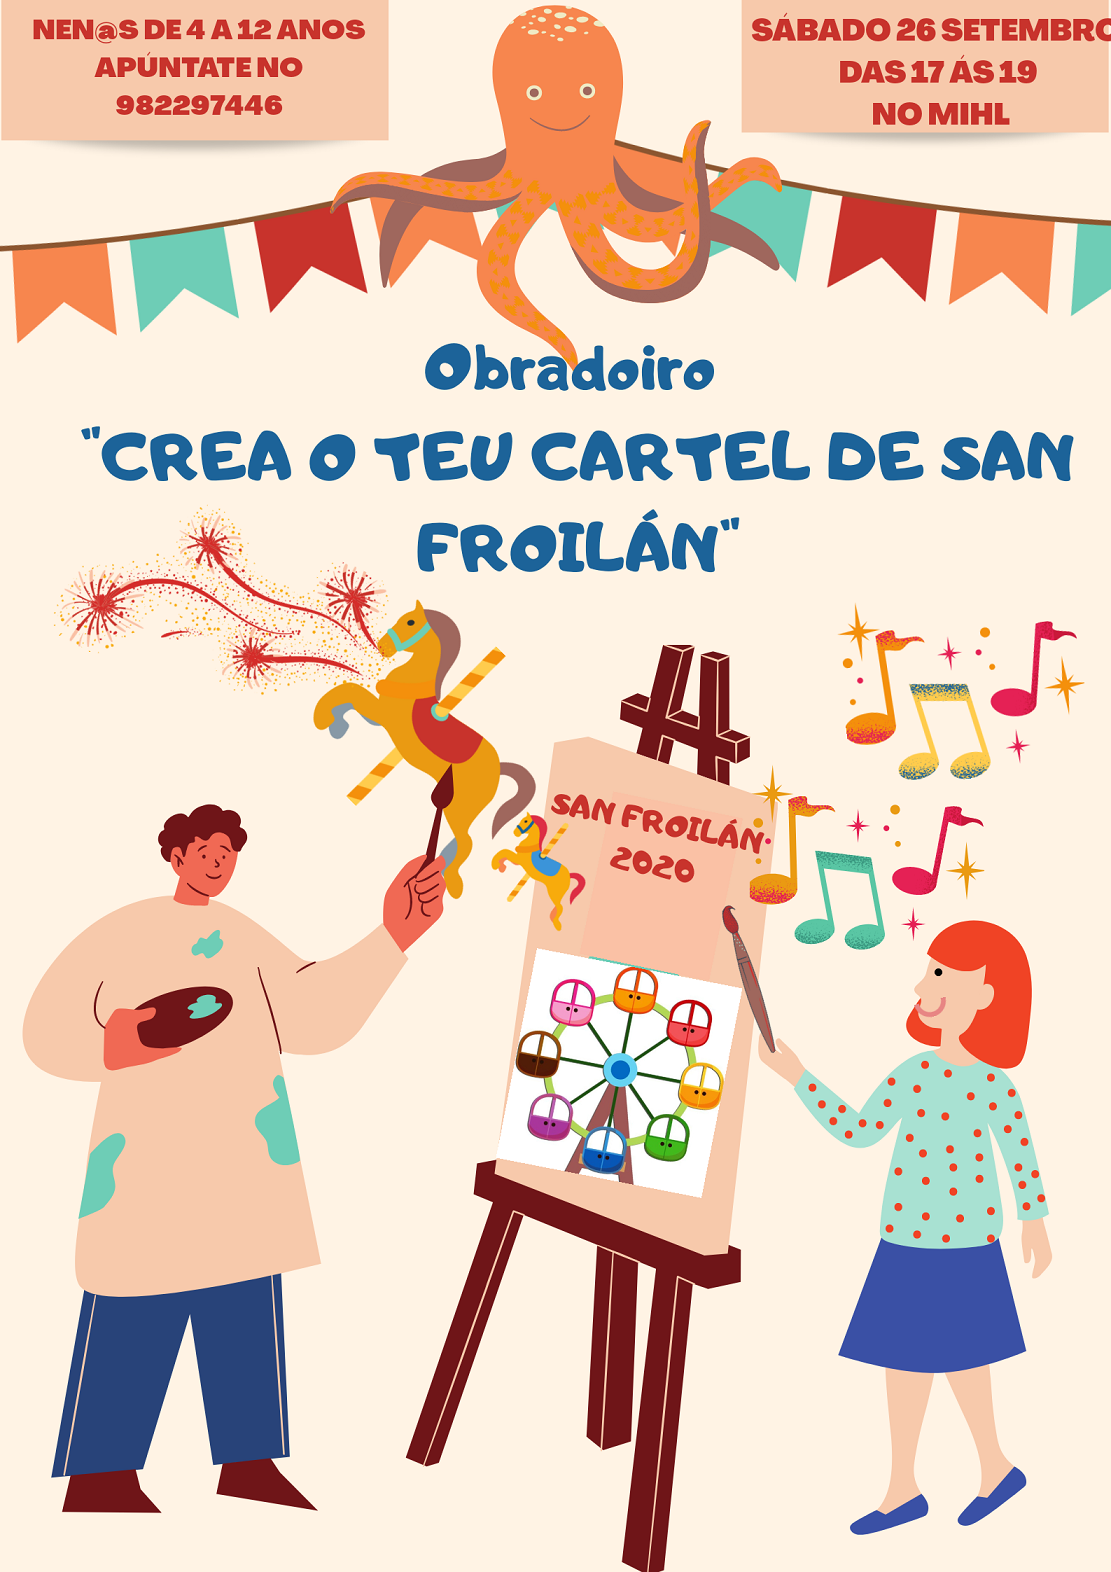 Obradorio infantil “Crea o teu cartaz de San Froilán”